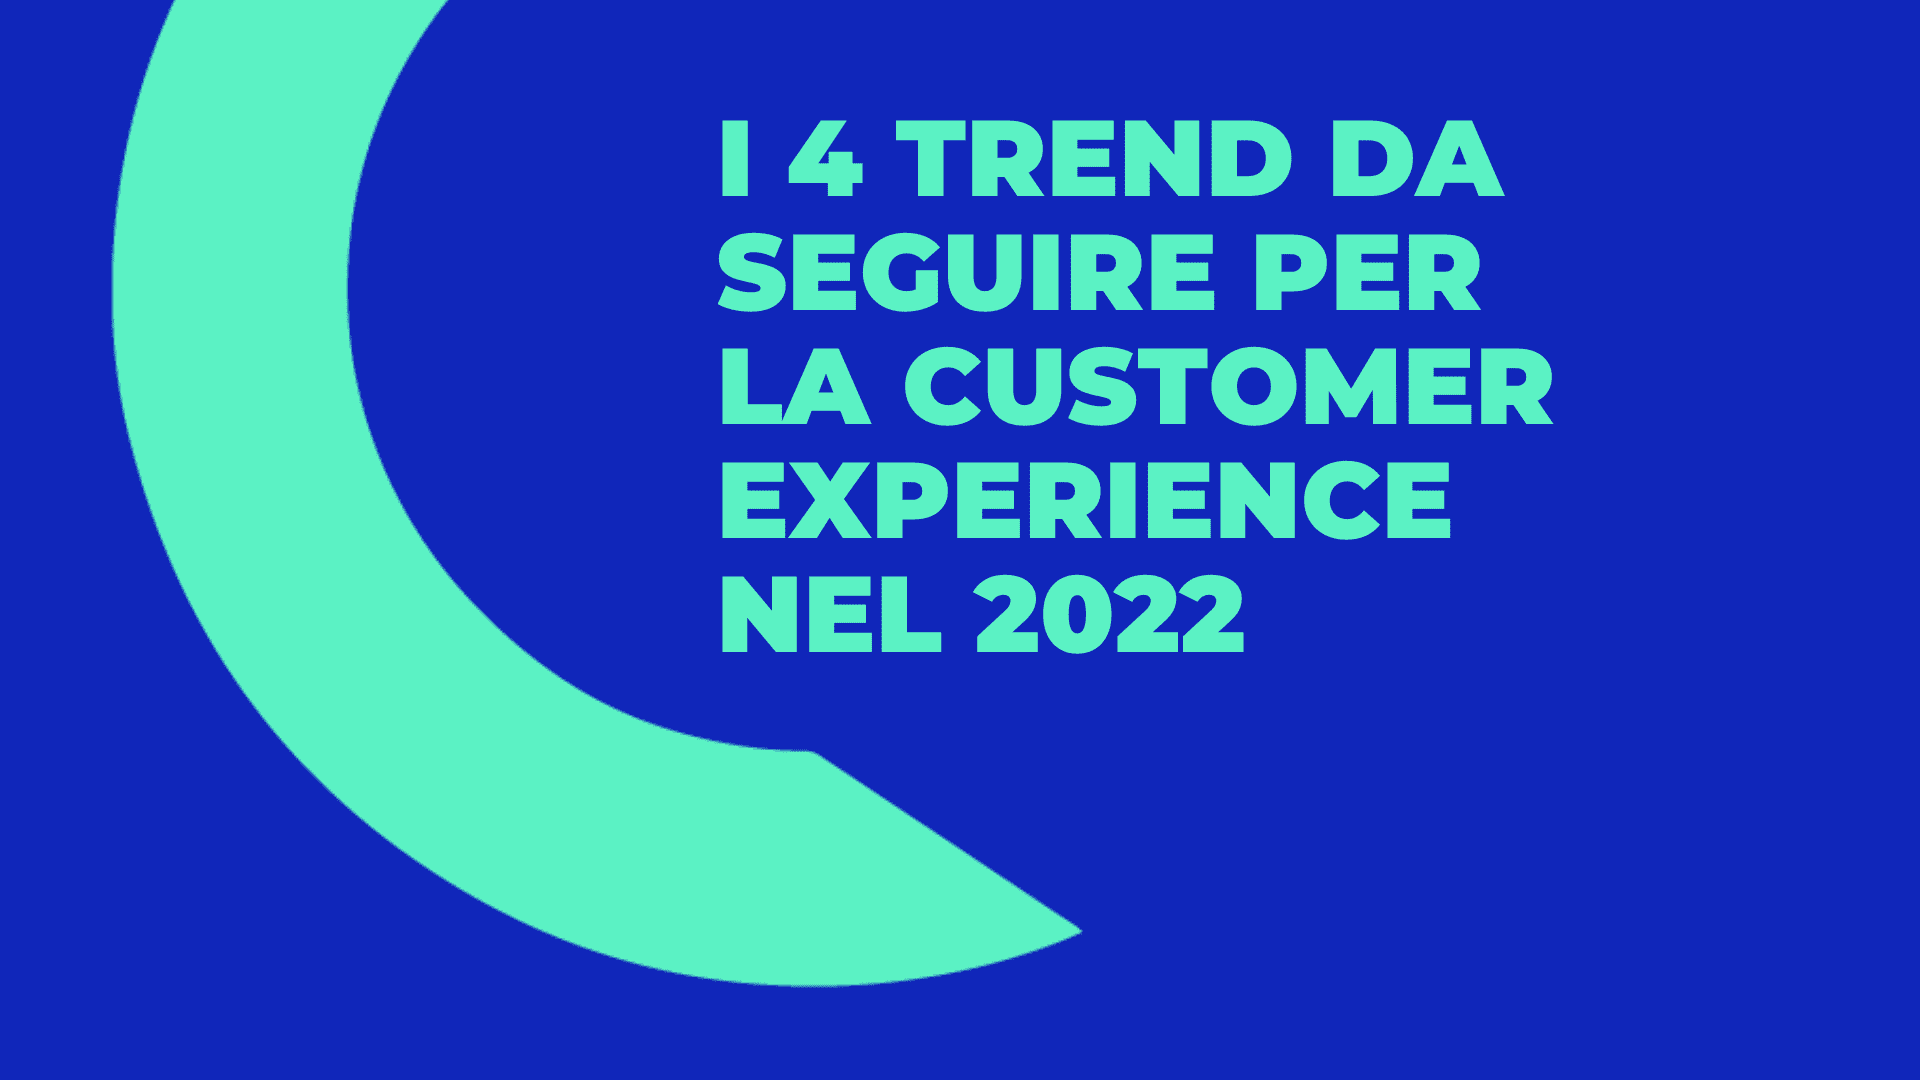 Articolo - I 4 trend da seguire per la Customer Experience nel 2022